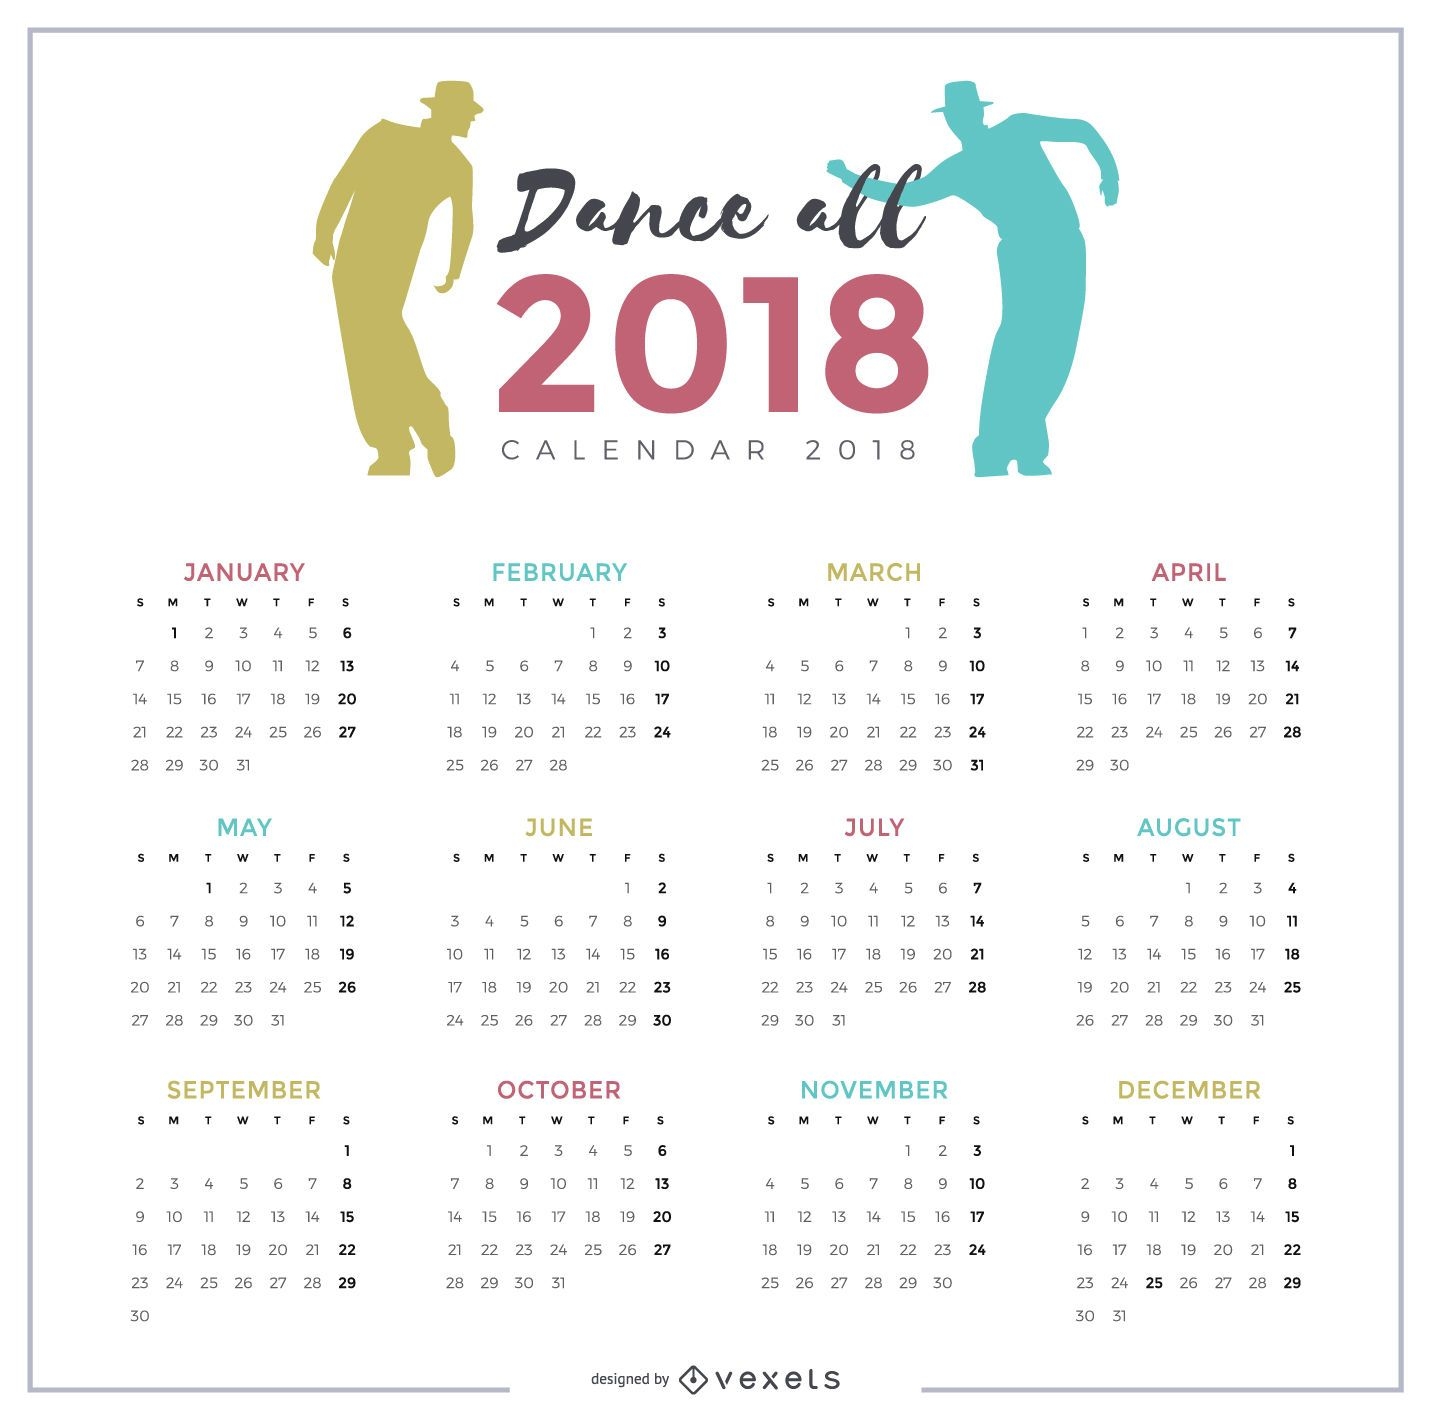 Diseño de calendario bailando 2018